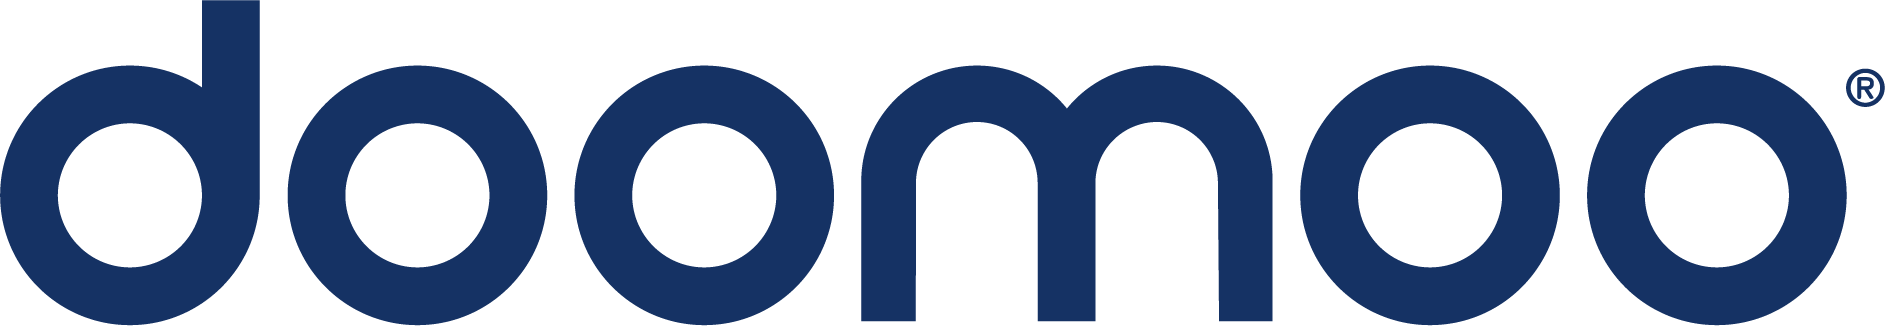 Doomoo-logo